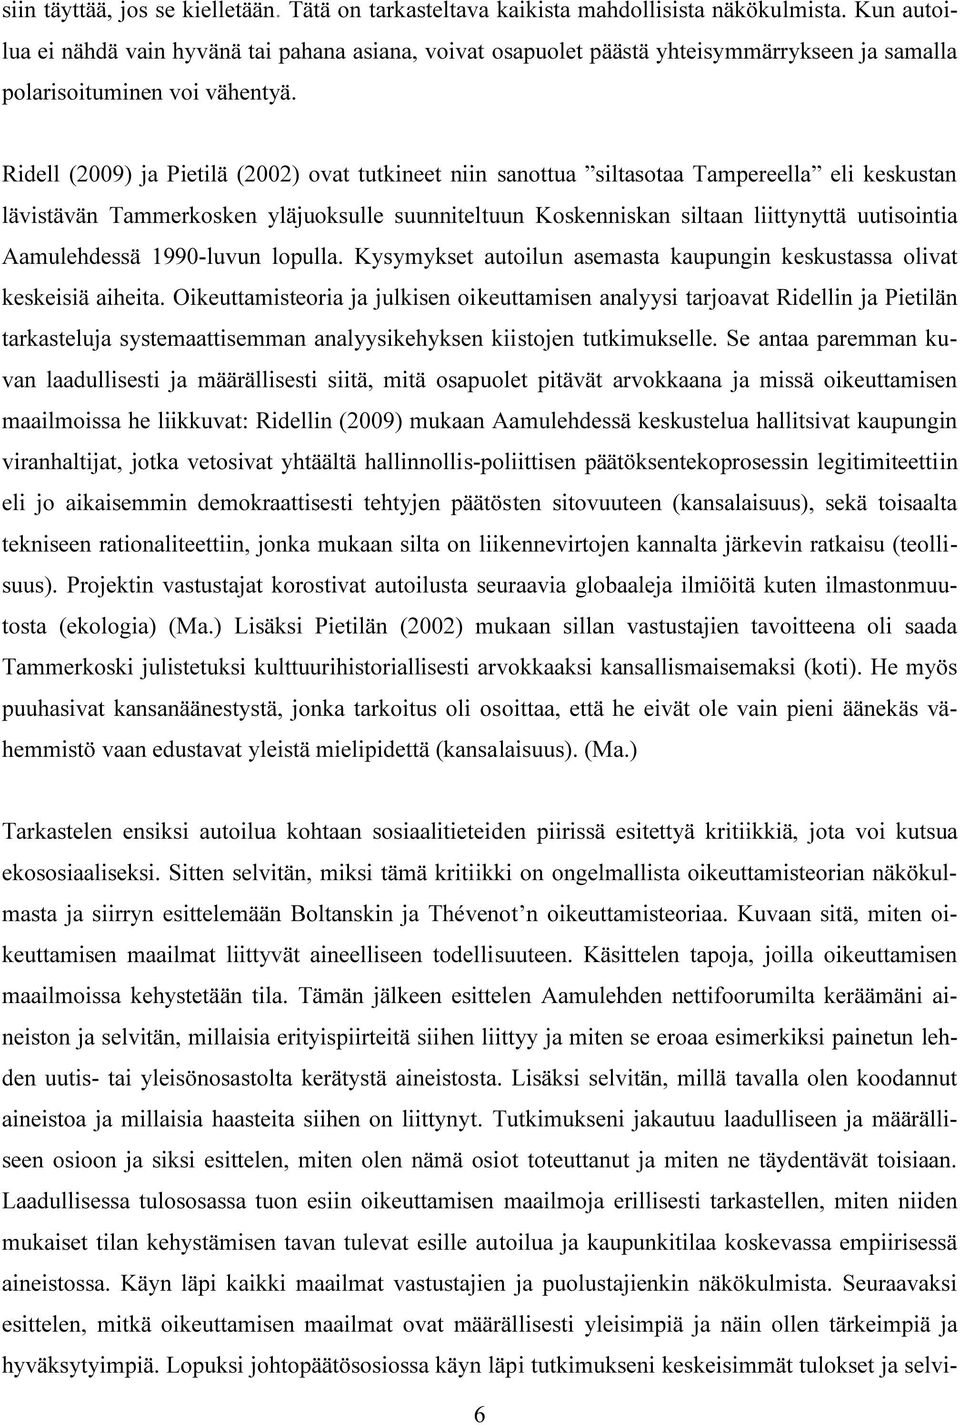 Ridell (2009) ja Pietilä (2002) ovat tutkineet niin sanottua siltasotaa Tampereella eli keskustan lävistävän Tammerkosken yläjuoksulle suunniteltuun Koskenniskan siltaan liittynyttä uutisointia